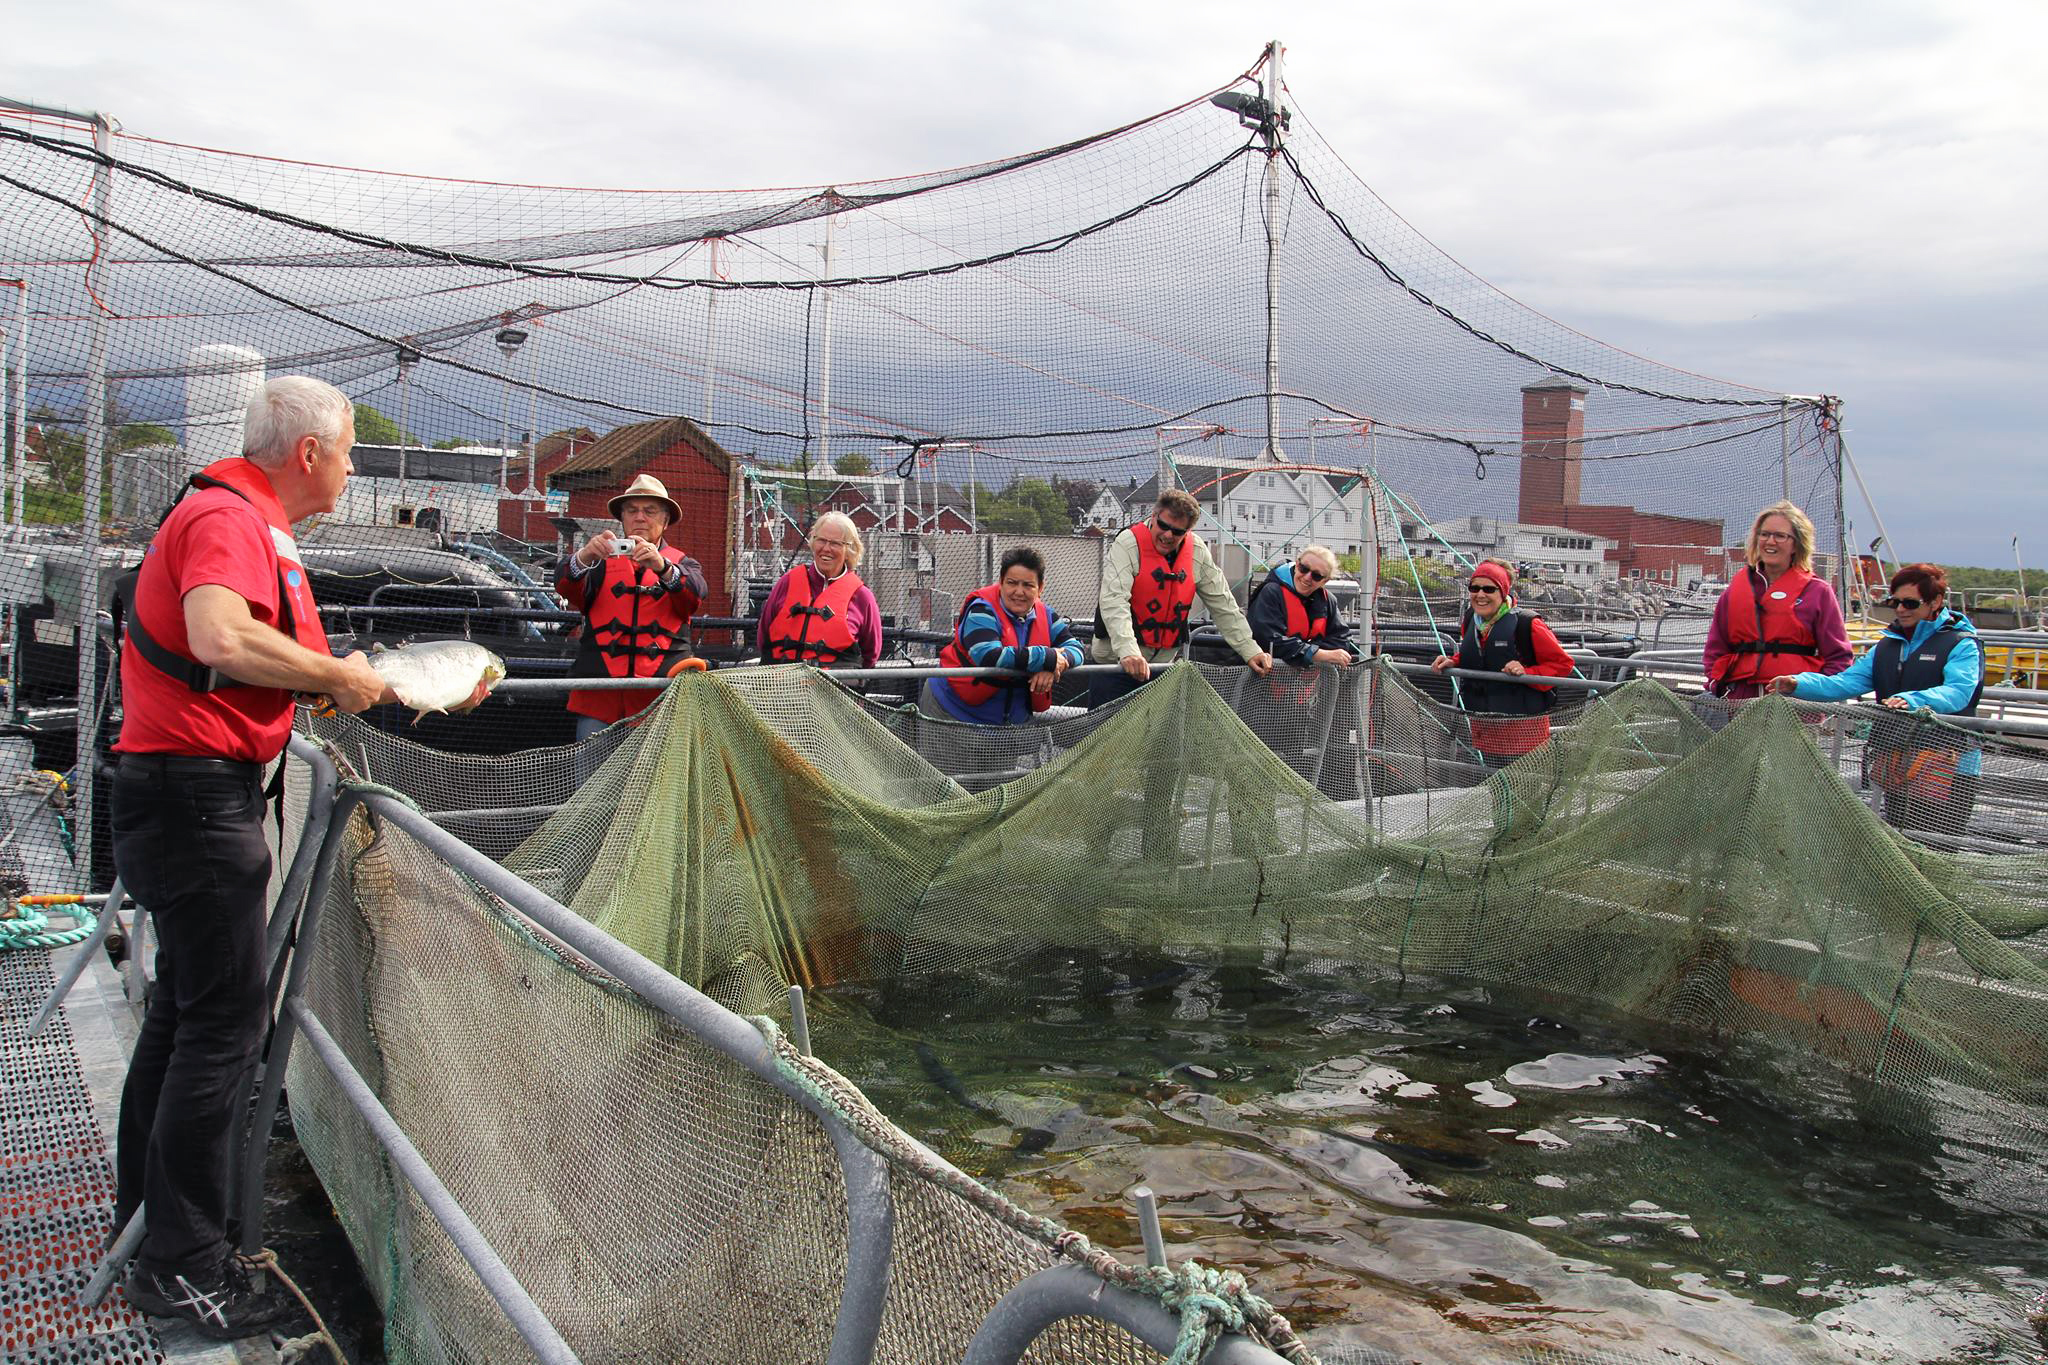 Norsk havbrukssenter har omvisninger hele året.